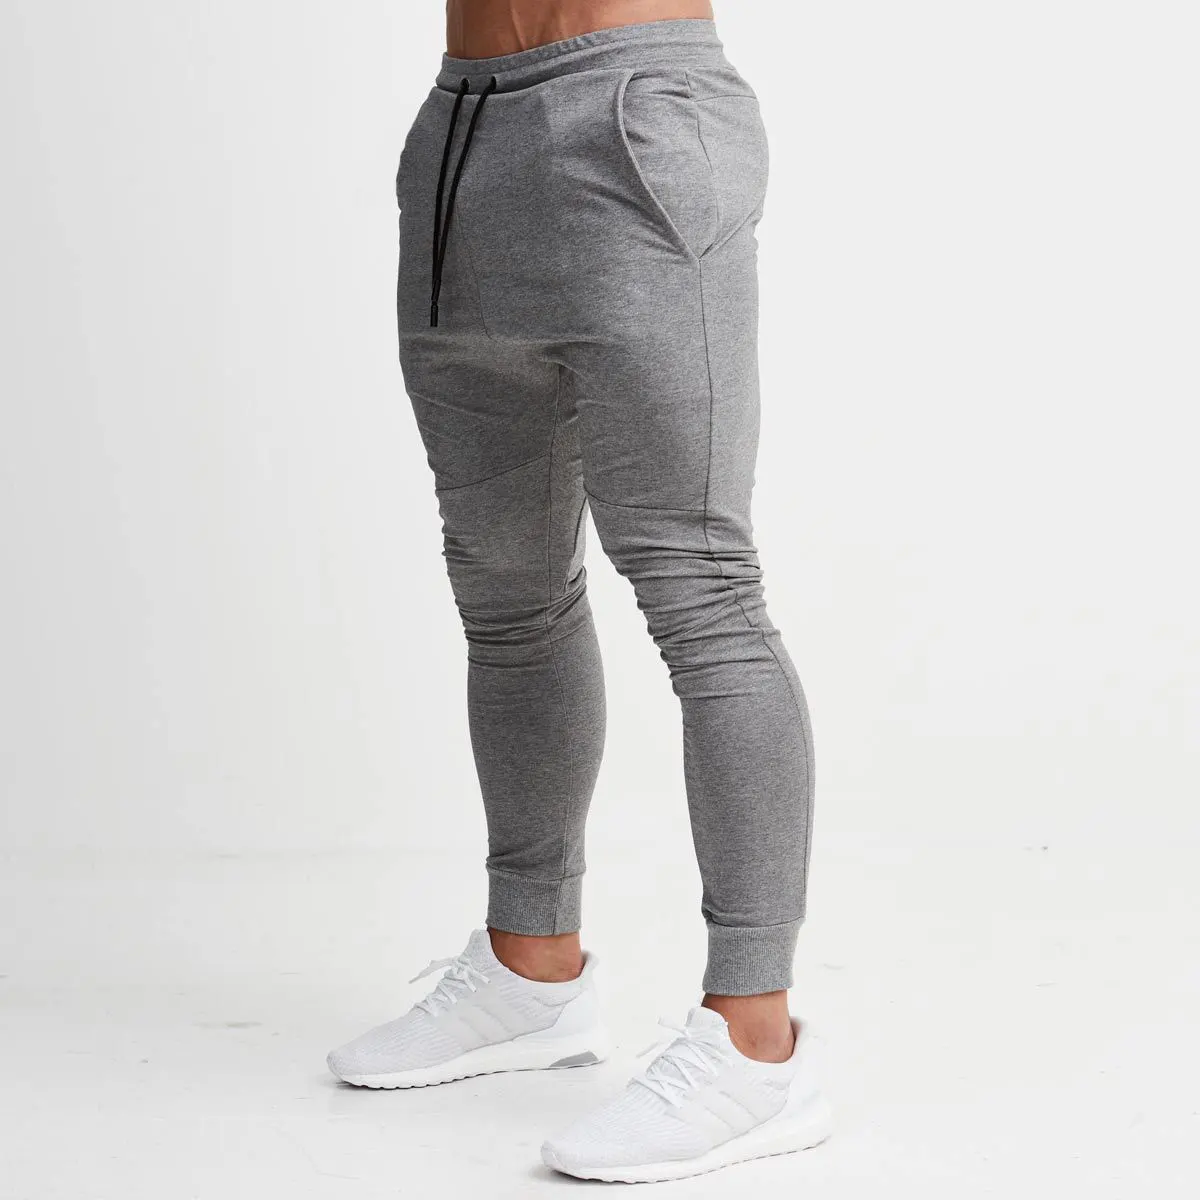 Pantaloni degli uomini più di formato personalizzato palestra sport organico di Pista Casuale Pantaloni Della Tuta da jogging di fitness mens pantaloni & pantaloni